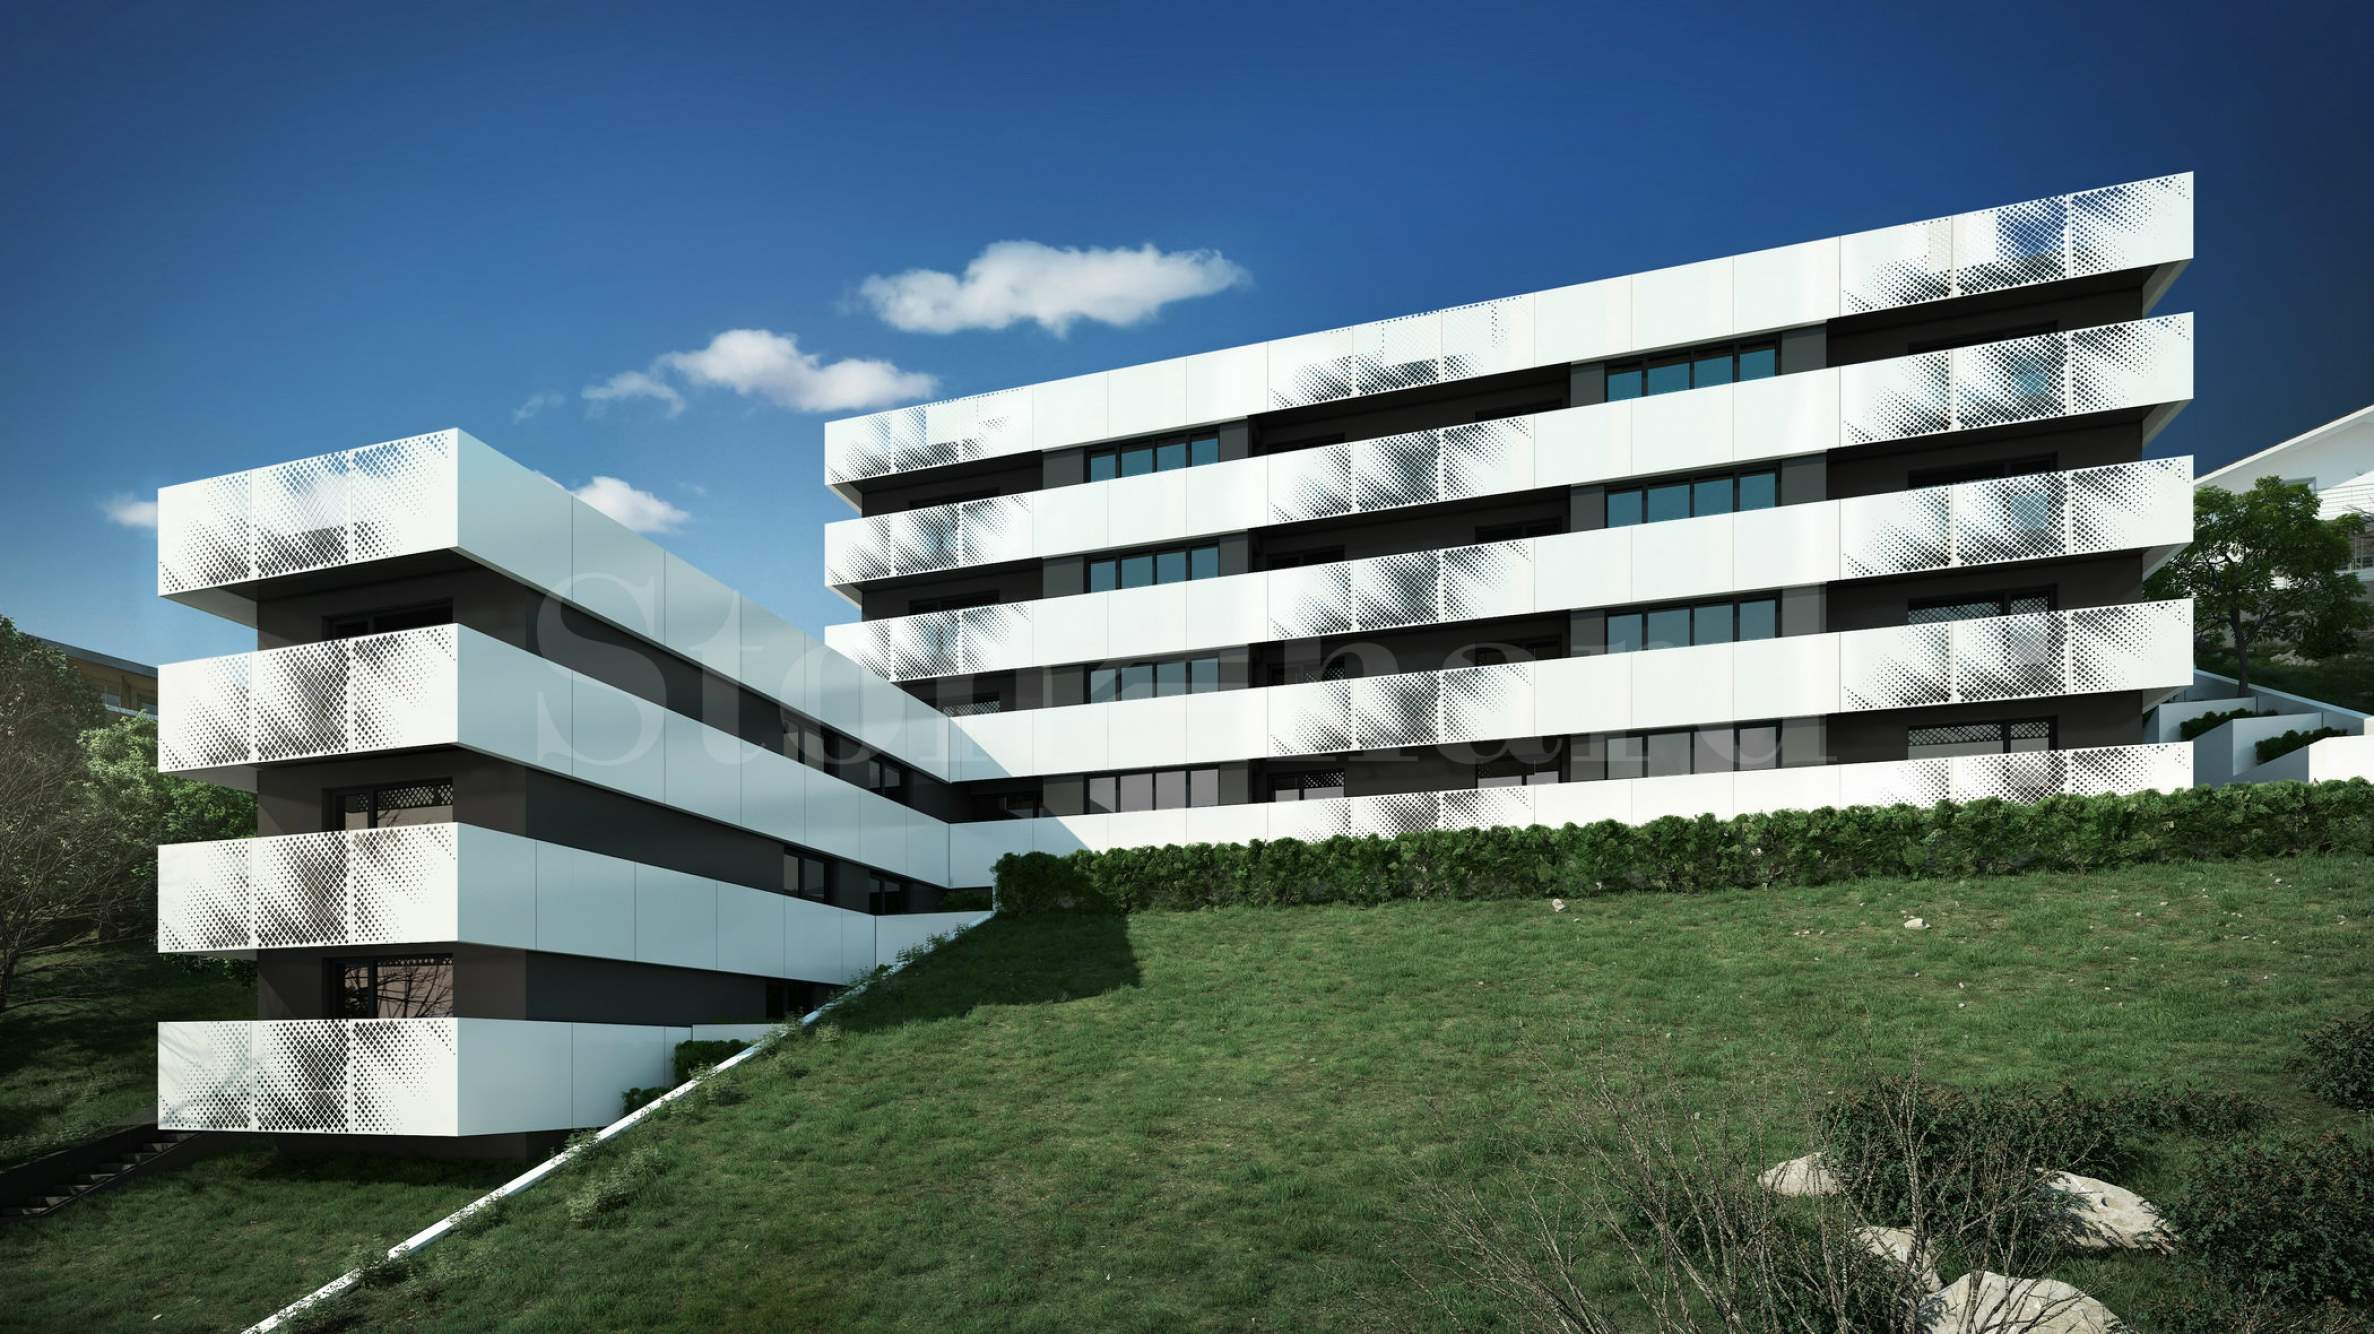 New residential building in the center of Briz quarter2 - Stonehard